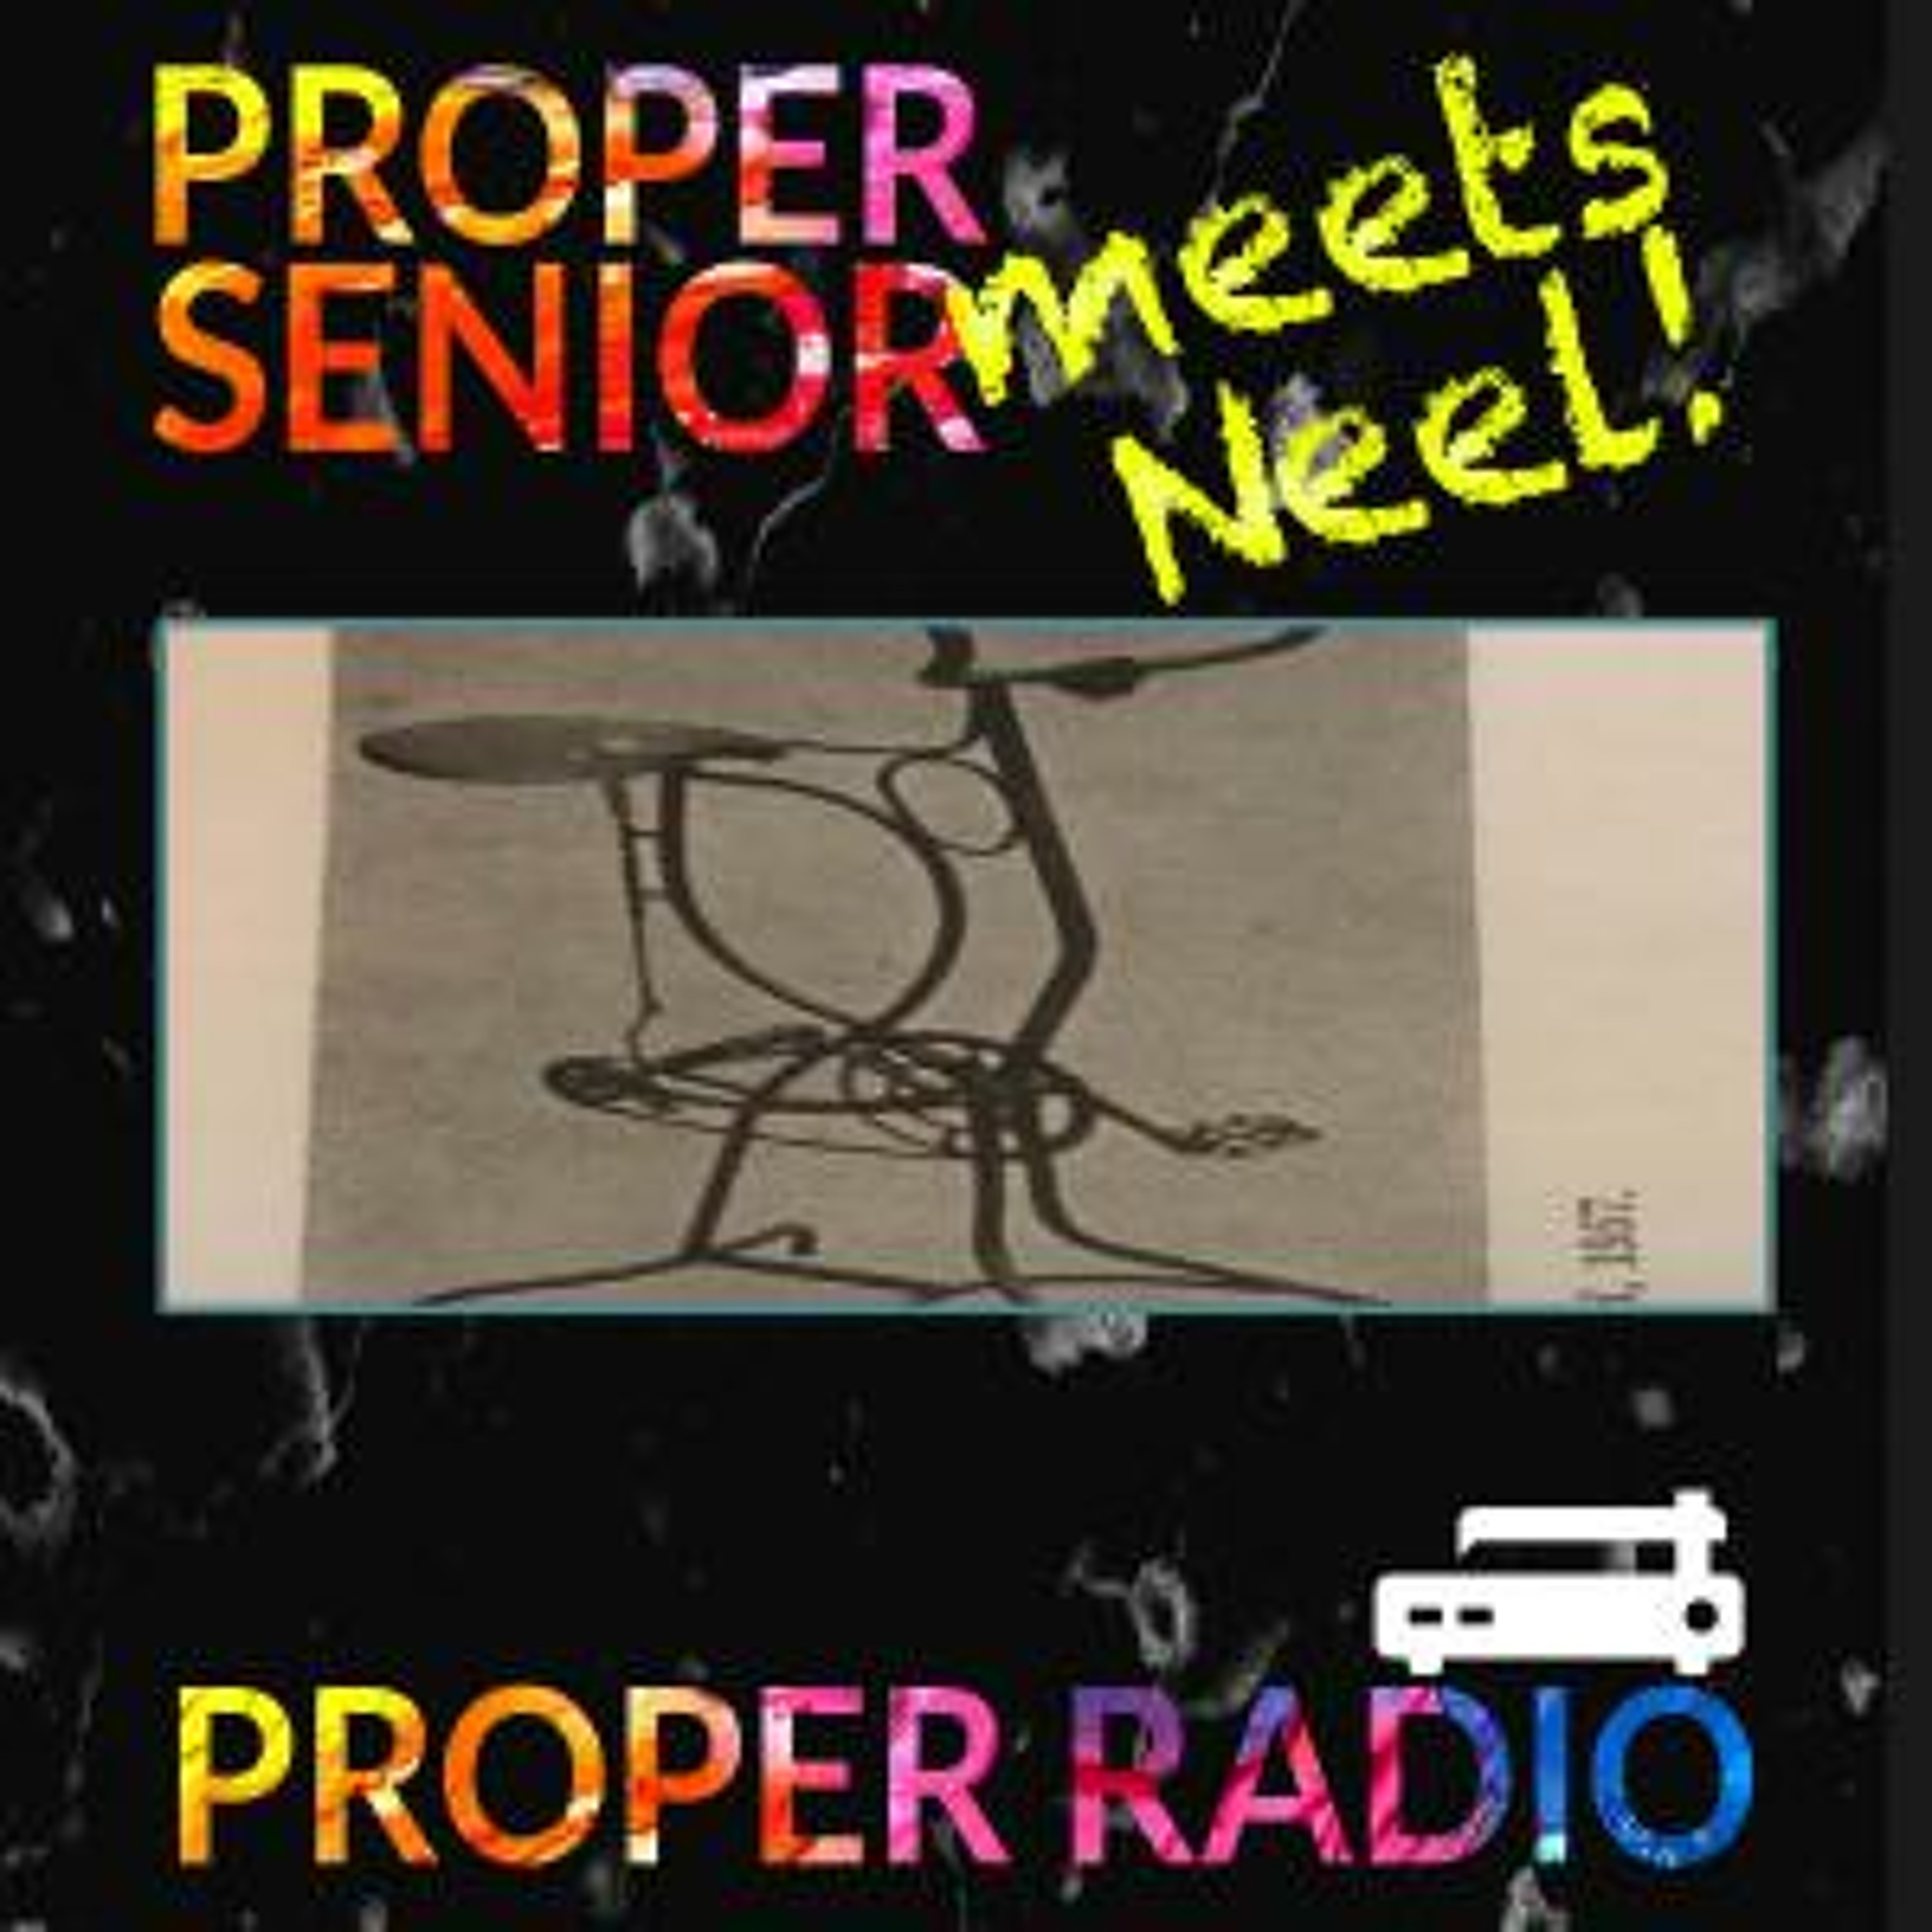 Proper Sr. meets Neel – Fiets – S01E05